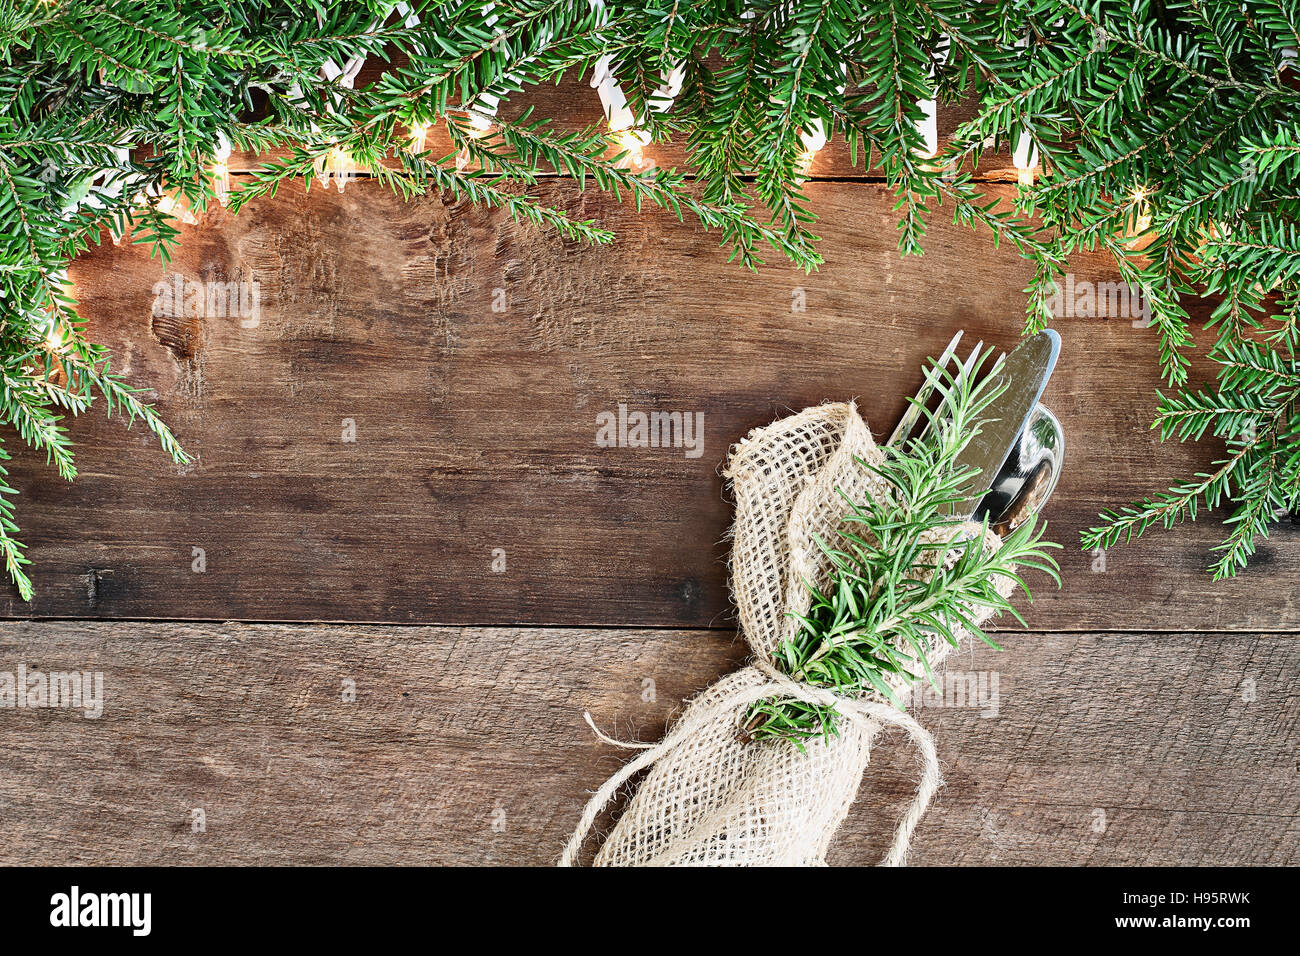 Albero di natale di rami di pino e luci decorative con posate su un sfondo rustico di legno del granaio. Immagine ripresa dalla testa. Foto Stock